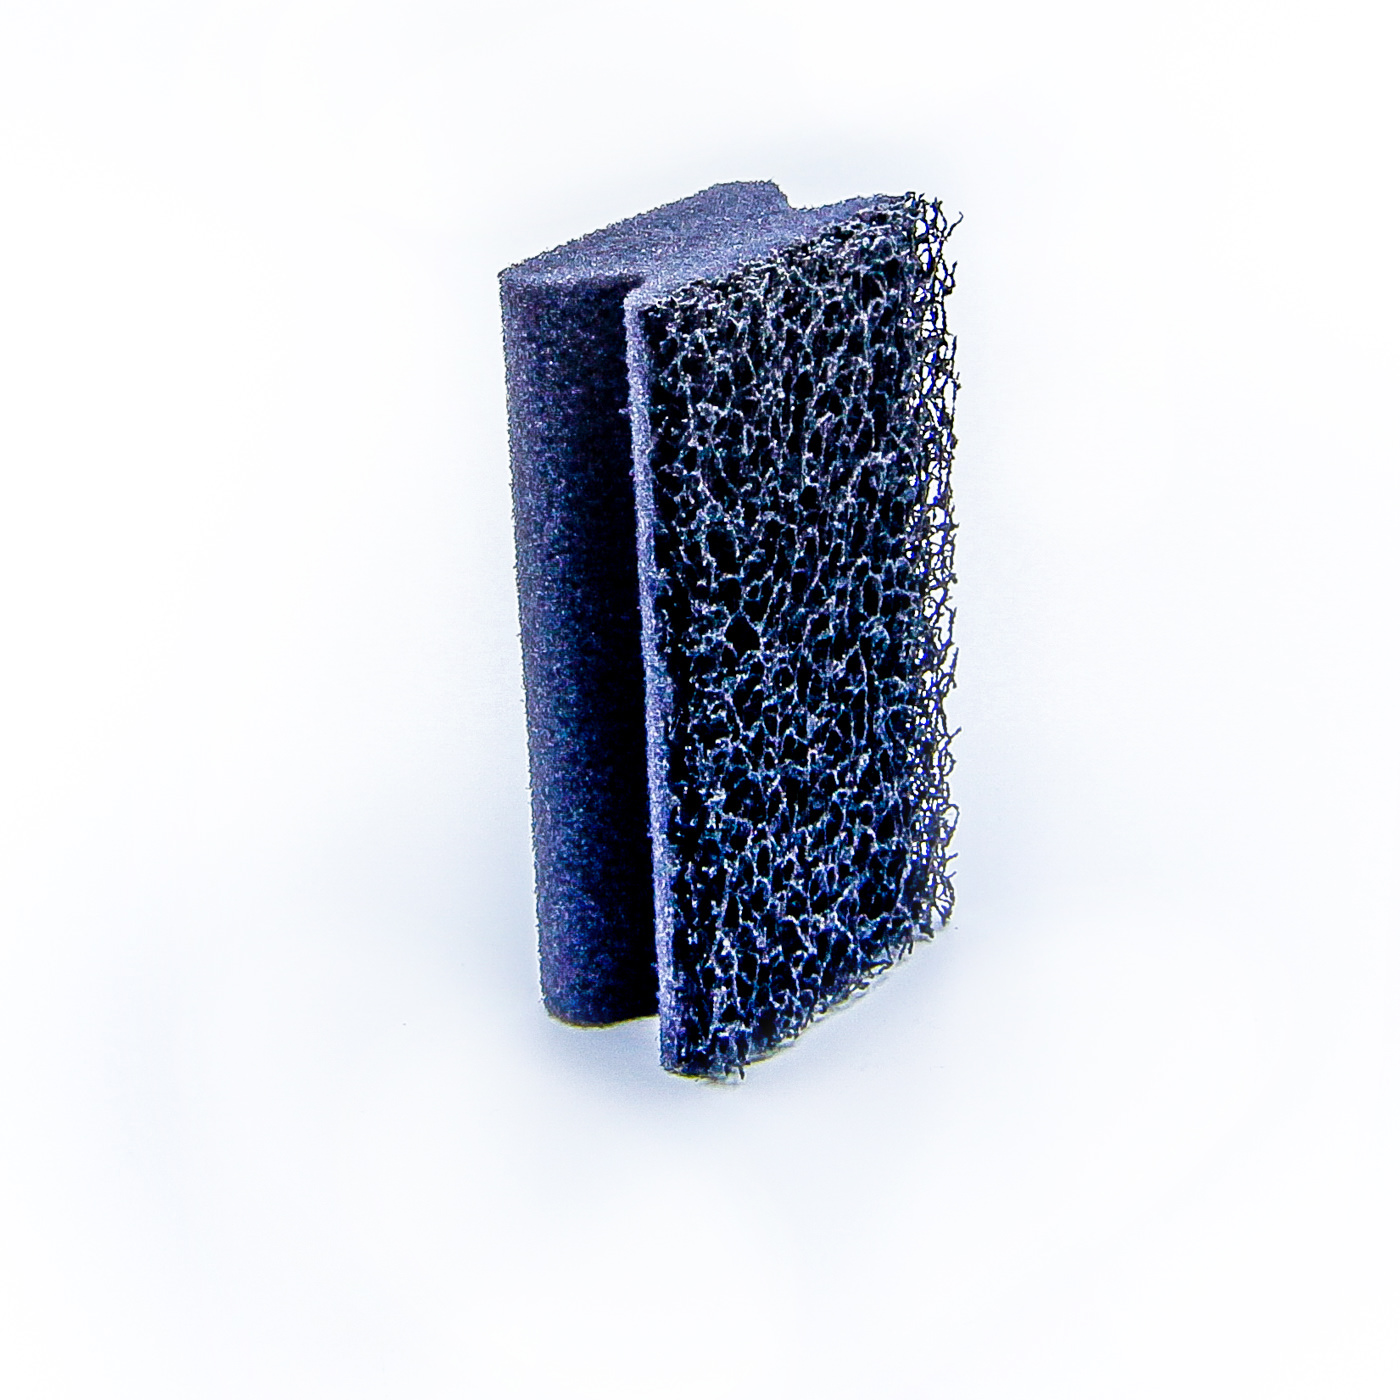 Poignée Tampon éponge noire.Un côté éponge l'autre abrasive